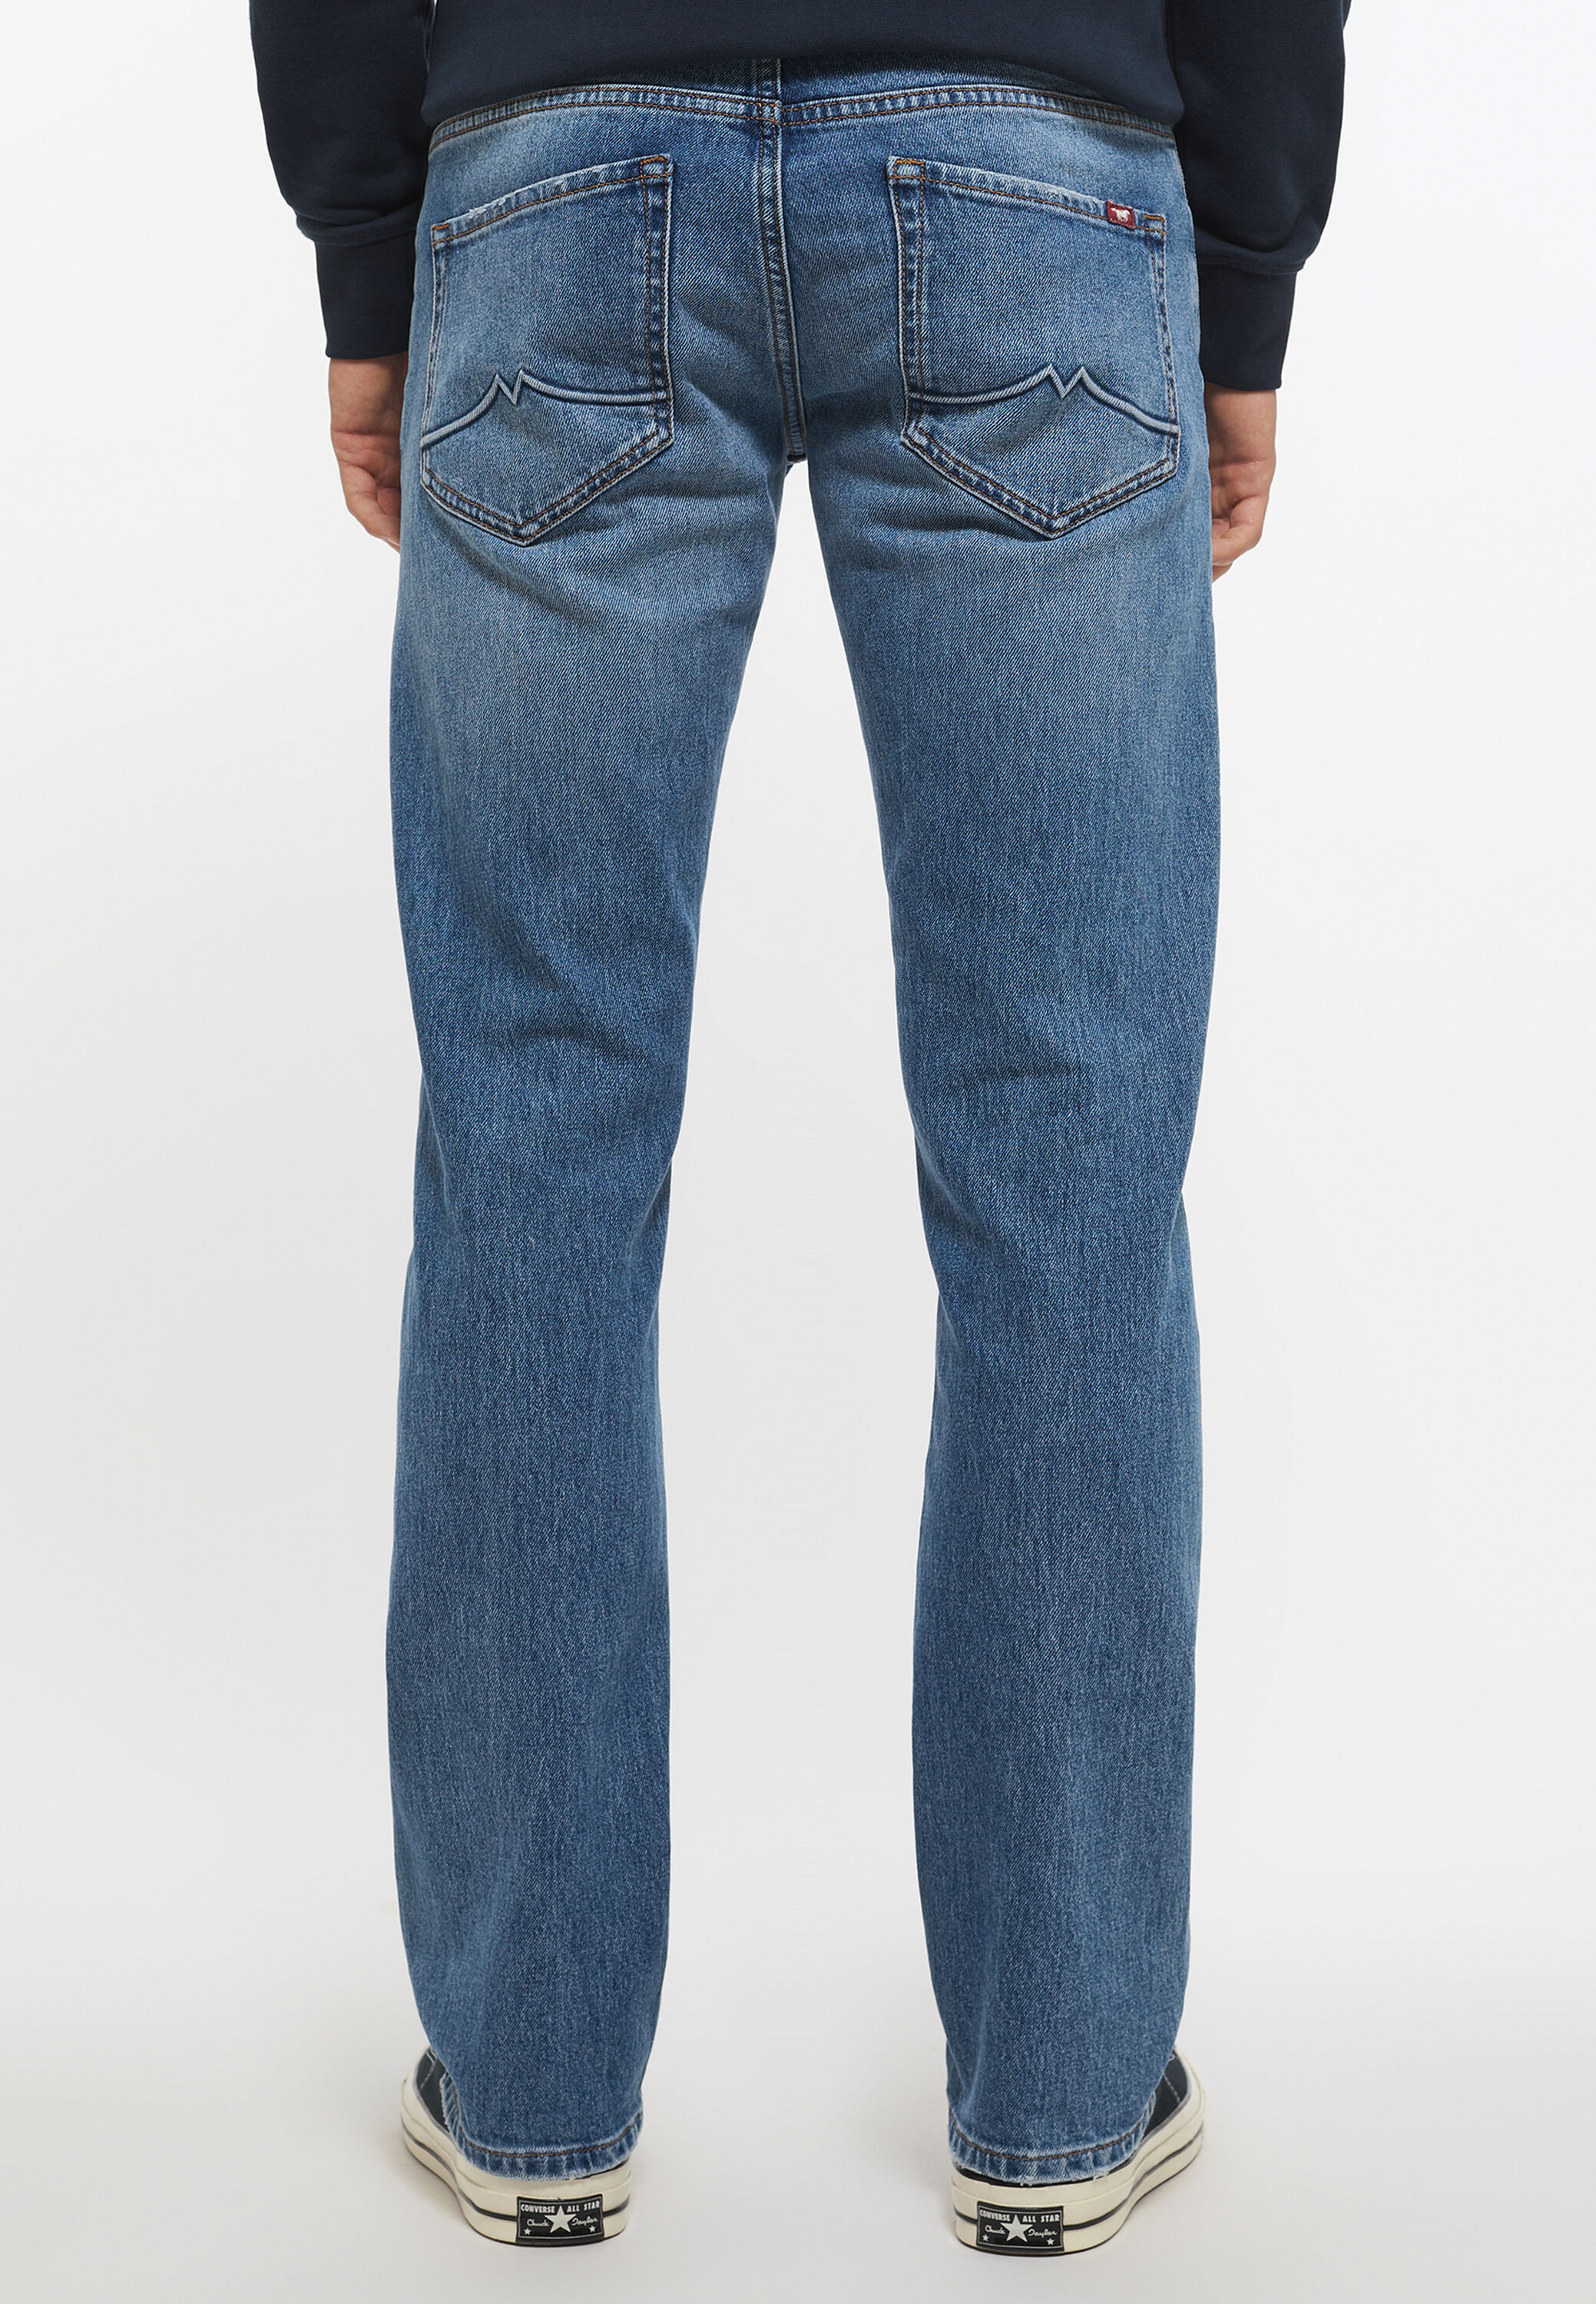 Herren Kleidung Jeans Gerade geschnittene Jeans Mustang Gerade geschnittene Jeans Jeans blau Mustang Gr 30/30 